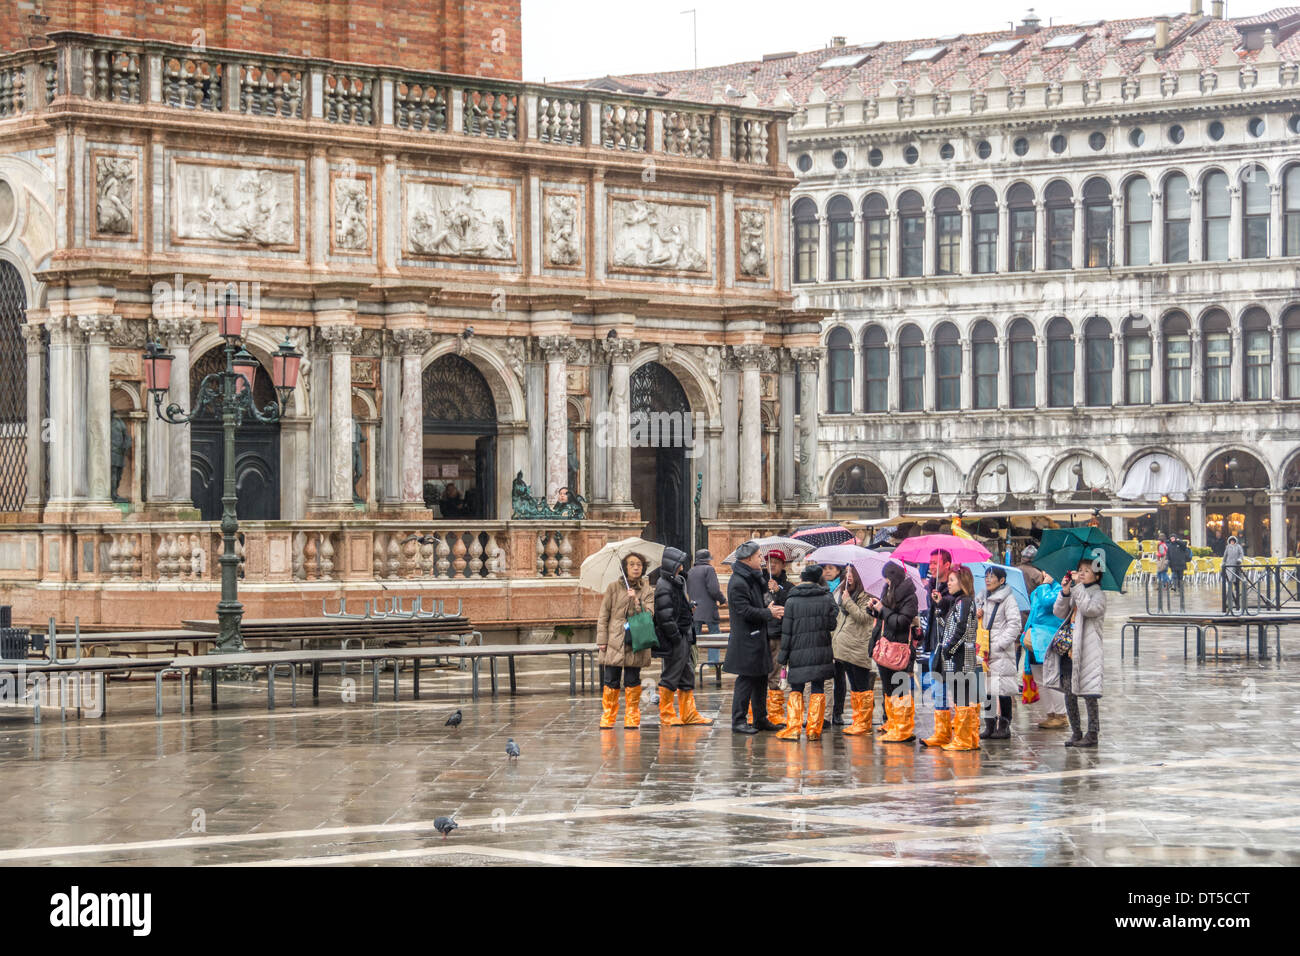 Venise, Italie. Les touristes asiatiques par temps humide, parapluies, vêtements et bottes de pluie orange sur la Place St Marc, Le Campanile de l'entrée. Banque D'Images